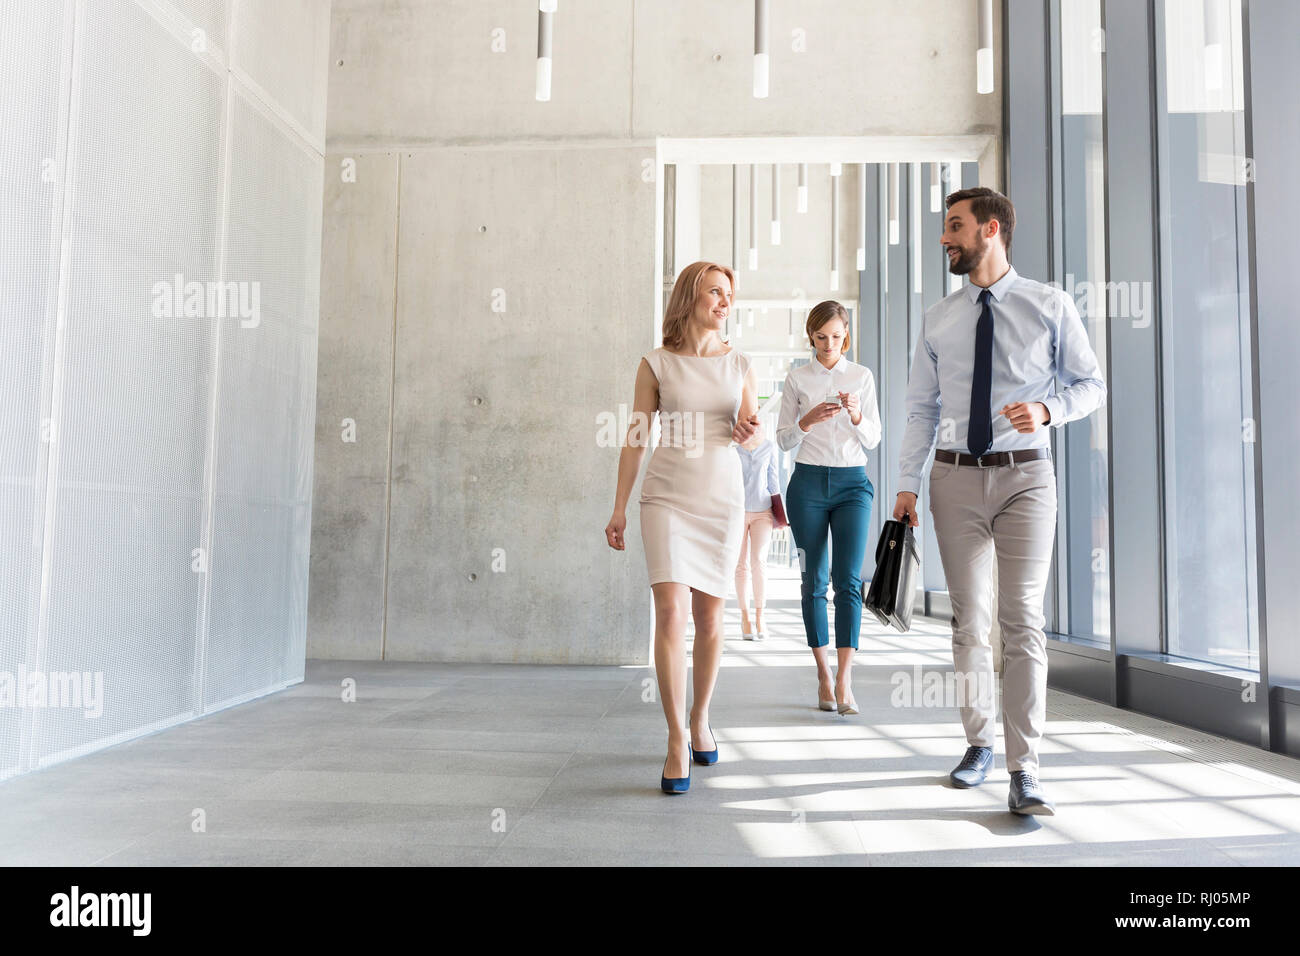 Fachleute sprechen bei einem Spaziergang in Büro Flur Stockfoto